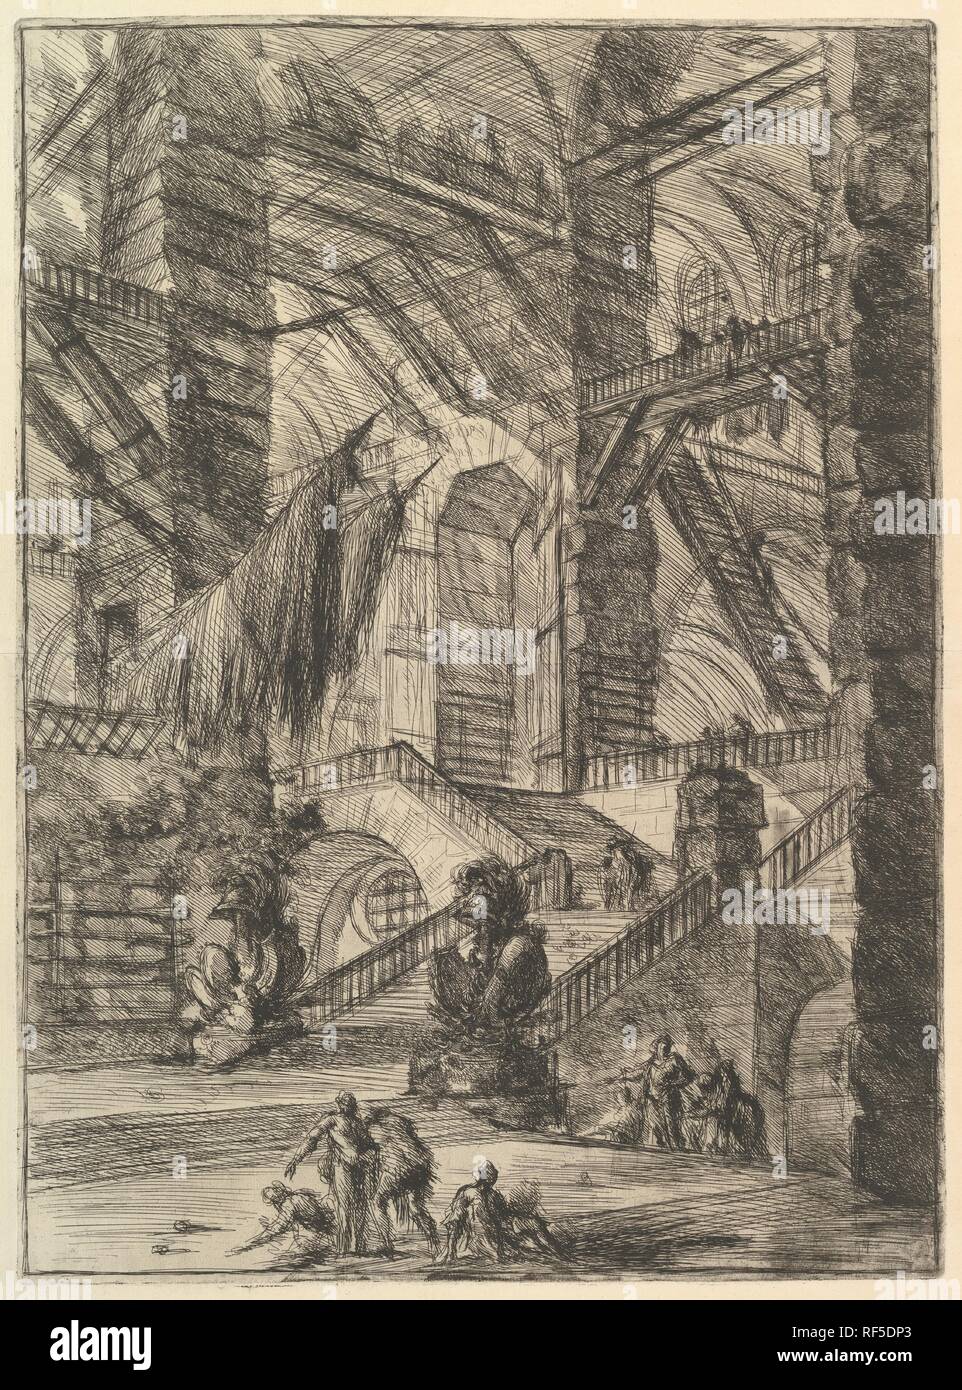 The Staircase with Trophies, from Carceri d'invenzione (Imaginary Prisons). Artist: Giovanni Battista Piranesi (Italian, Mogliano Veneto 1720-1778 Rome). Dimensions: Sheet: 25 x 19 1/2 in. (63.5 x 49.5 cm)  Plate: 21 1/2 x 15 3/4 in. (54.6 x 40 cm). Publisher: Giovanni Bouchard (French, ca. 1716-1795). Series/Portfolio: Carceri d'invenzione. Date: ca. 1749-50. Museum: Metropolitan Museum of Art, New York, USA. Stock Photo